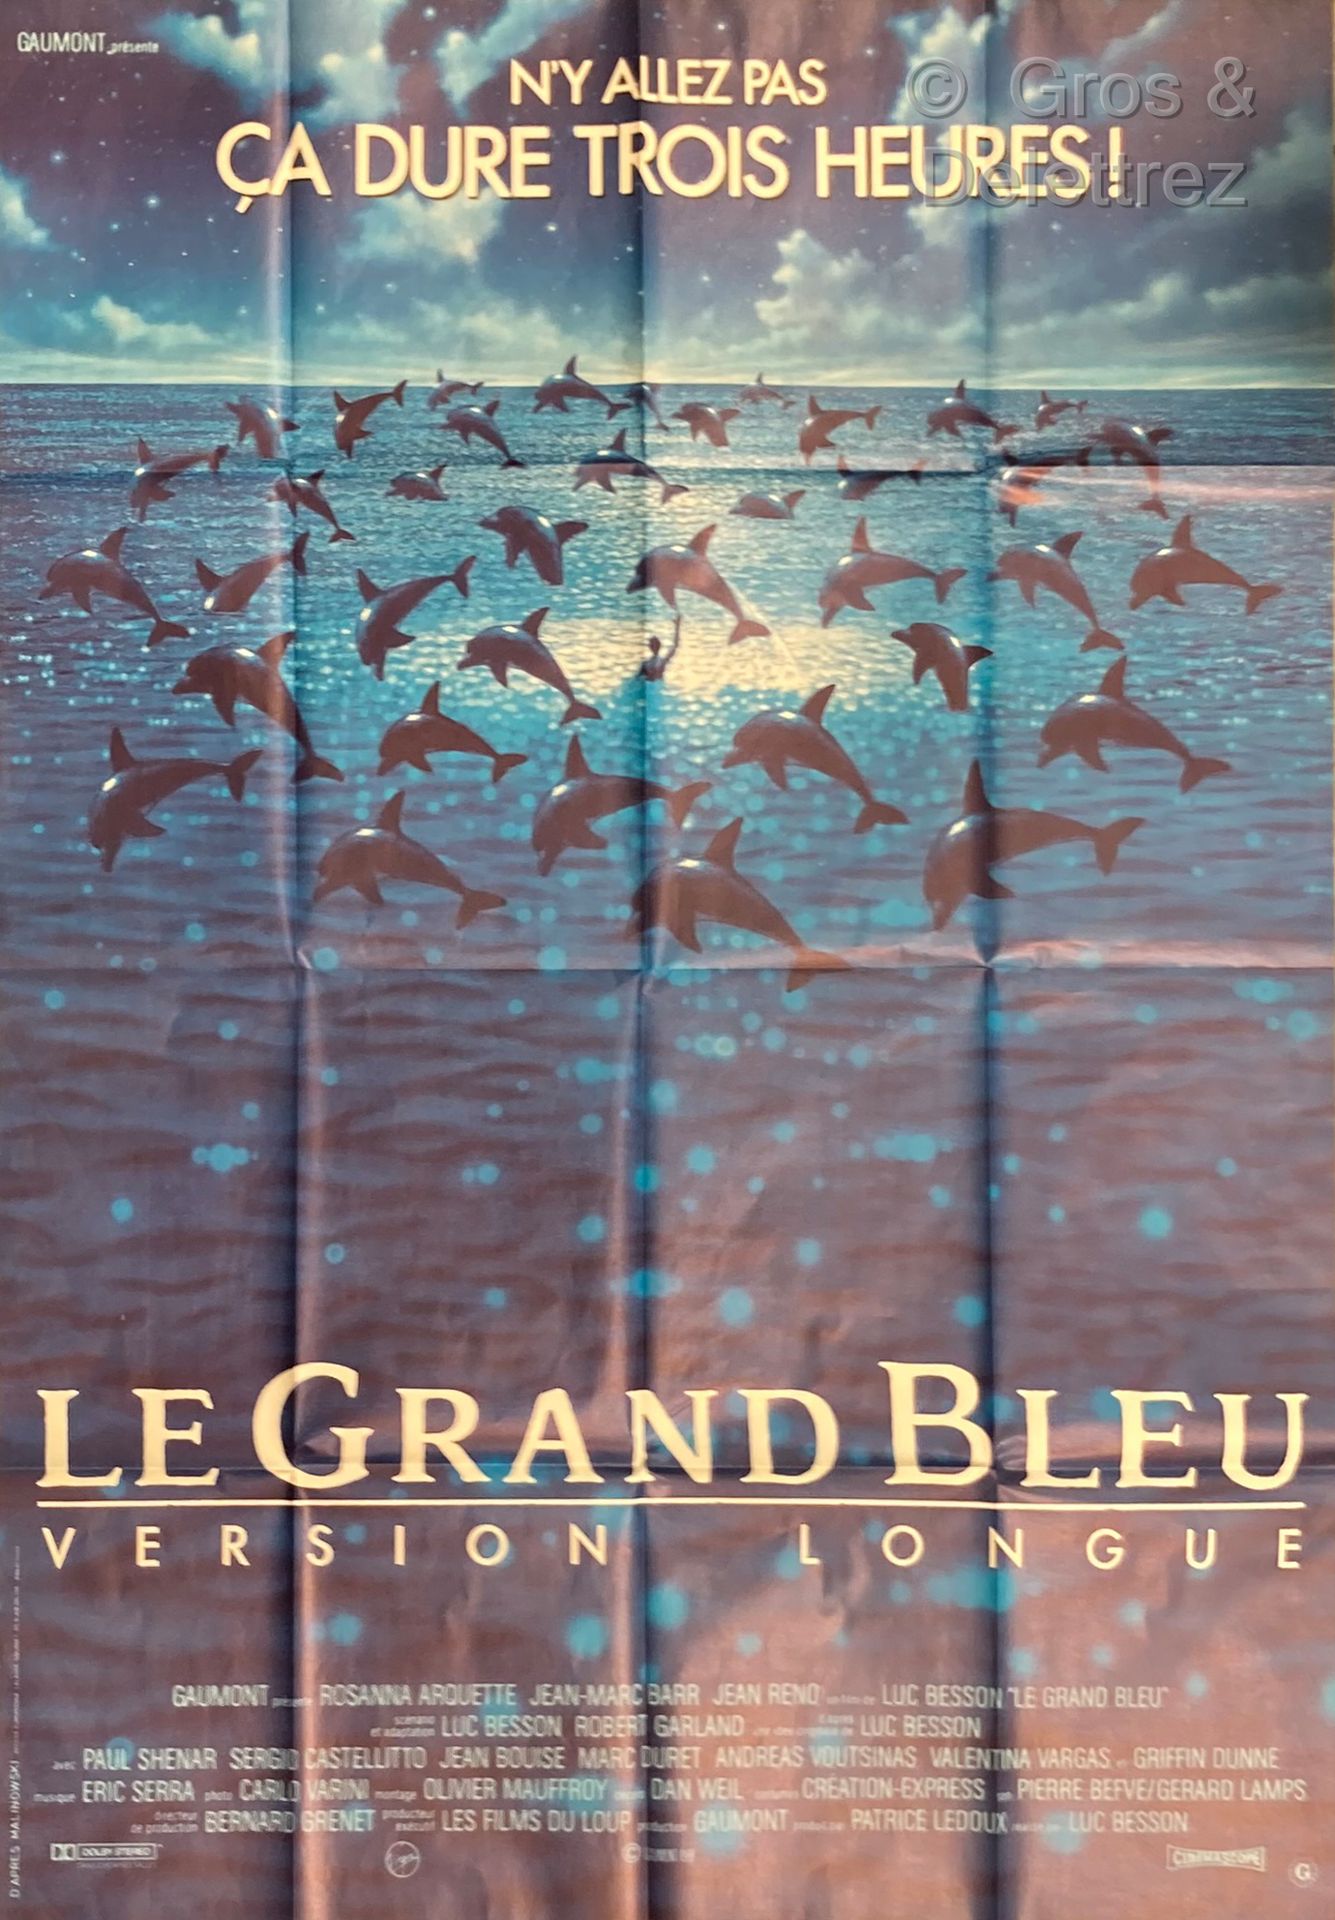 LUC BESSON IL GRANDE BLU, versione lunga

Locandina del film

157 x 116 cm